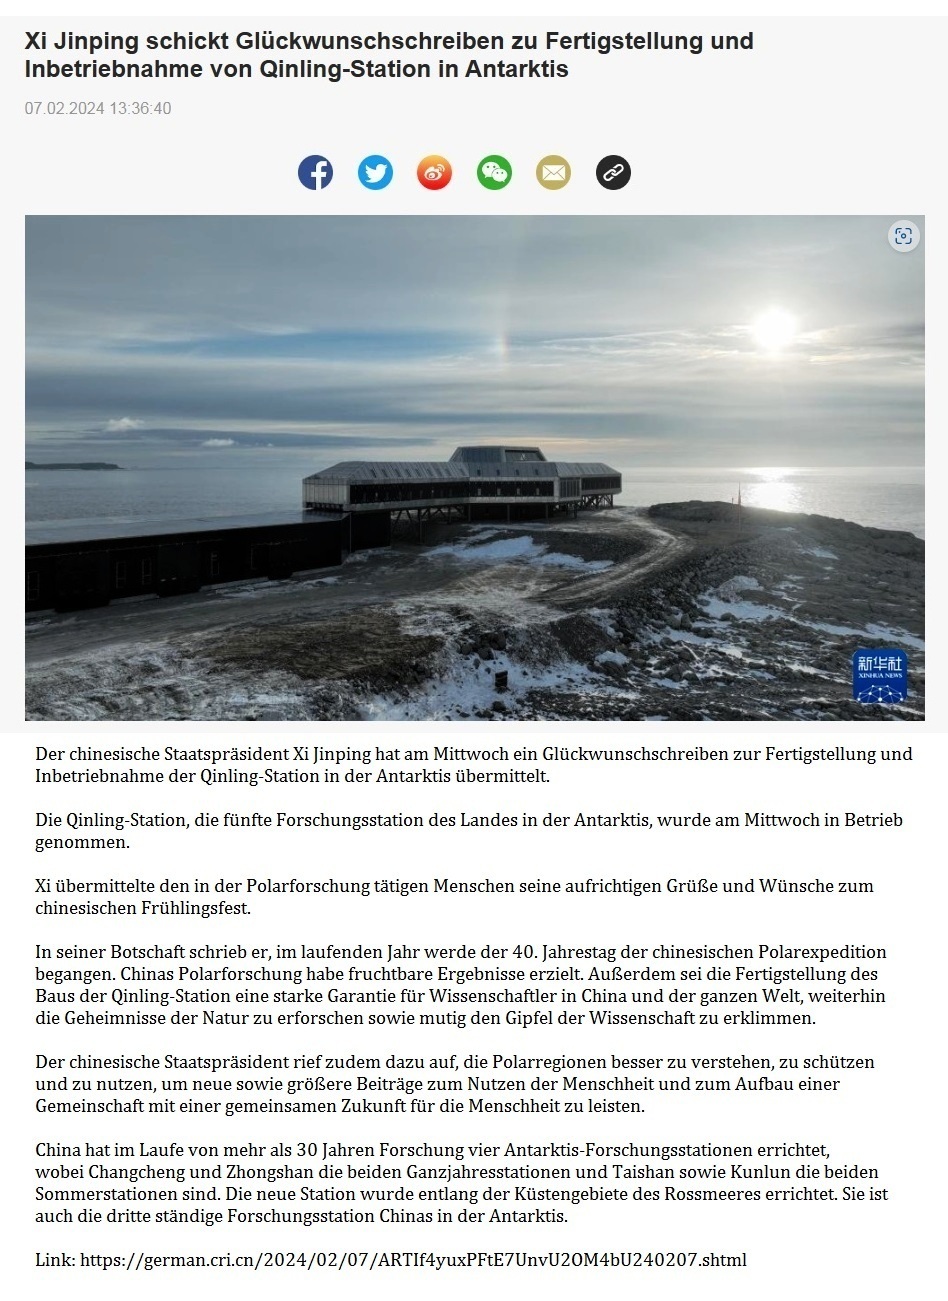 Xi Jinping schickt Glckwunschschreiben zu Fertigstellung und Inbetriebnahme von Qinling-Station in Antarktis - 07.02.2024 13:36:40 - CRI online Deutsch - Link: https://german.cri.cn/2024/02/07/ARTIf4yuxPFtE7UnvU2OM4bU240207.shtml 